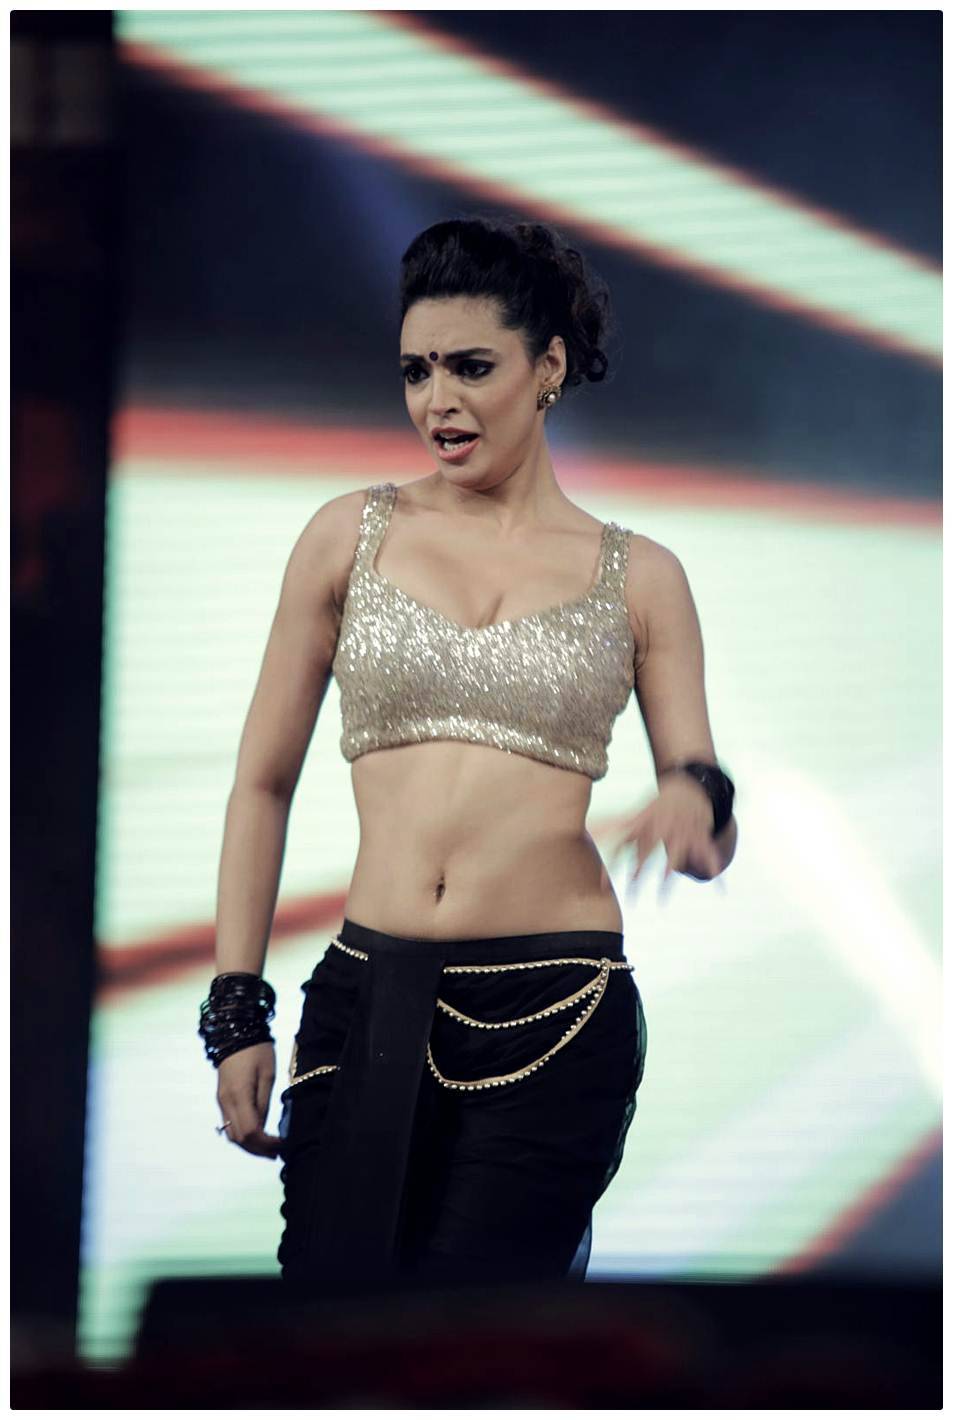 Shweta Bhardwaj Hot Dance in Adda Audio Launch Photos | Picture 488921